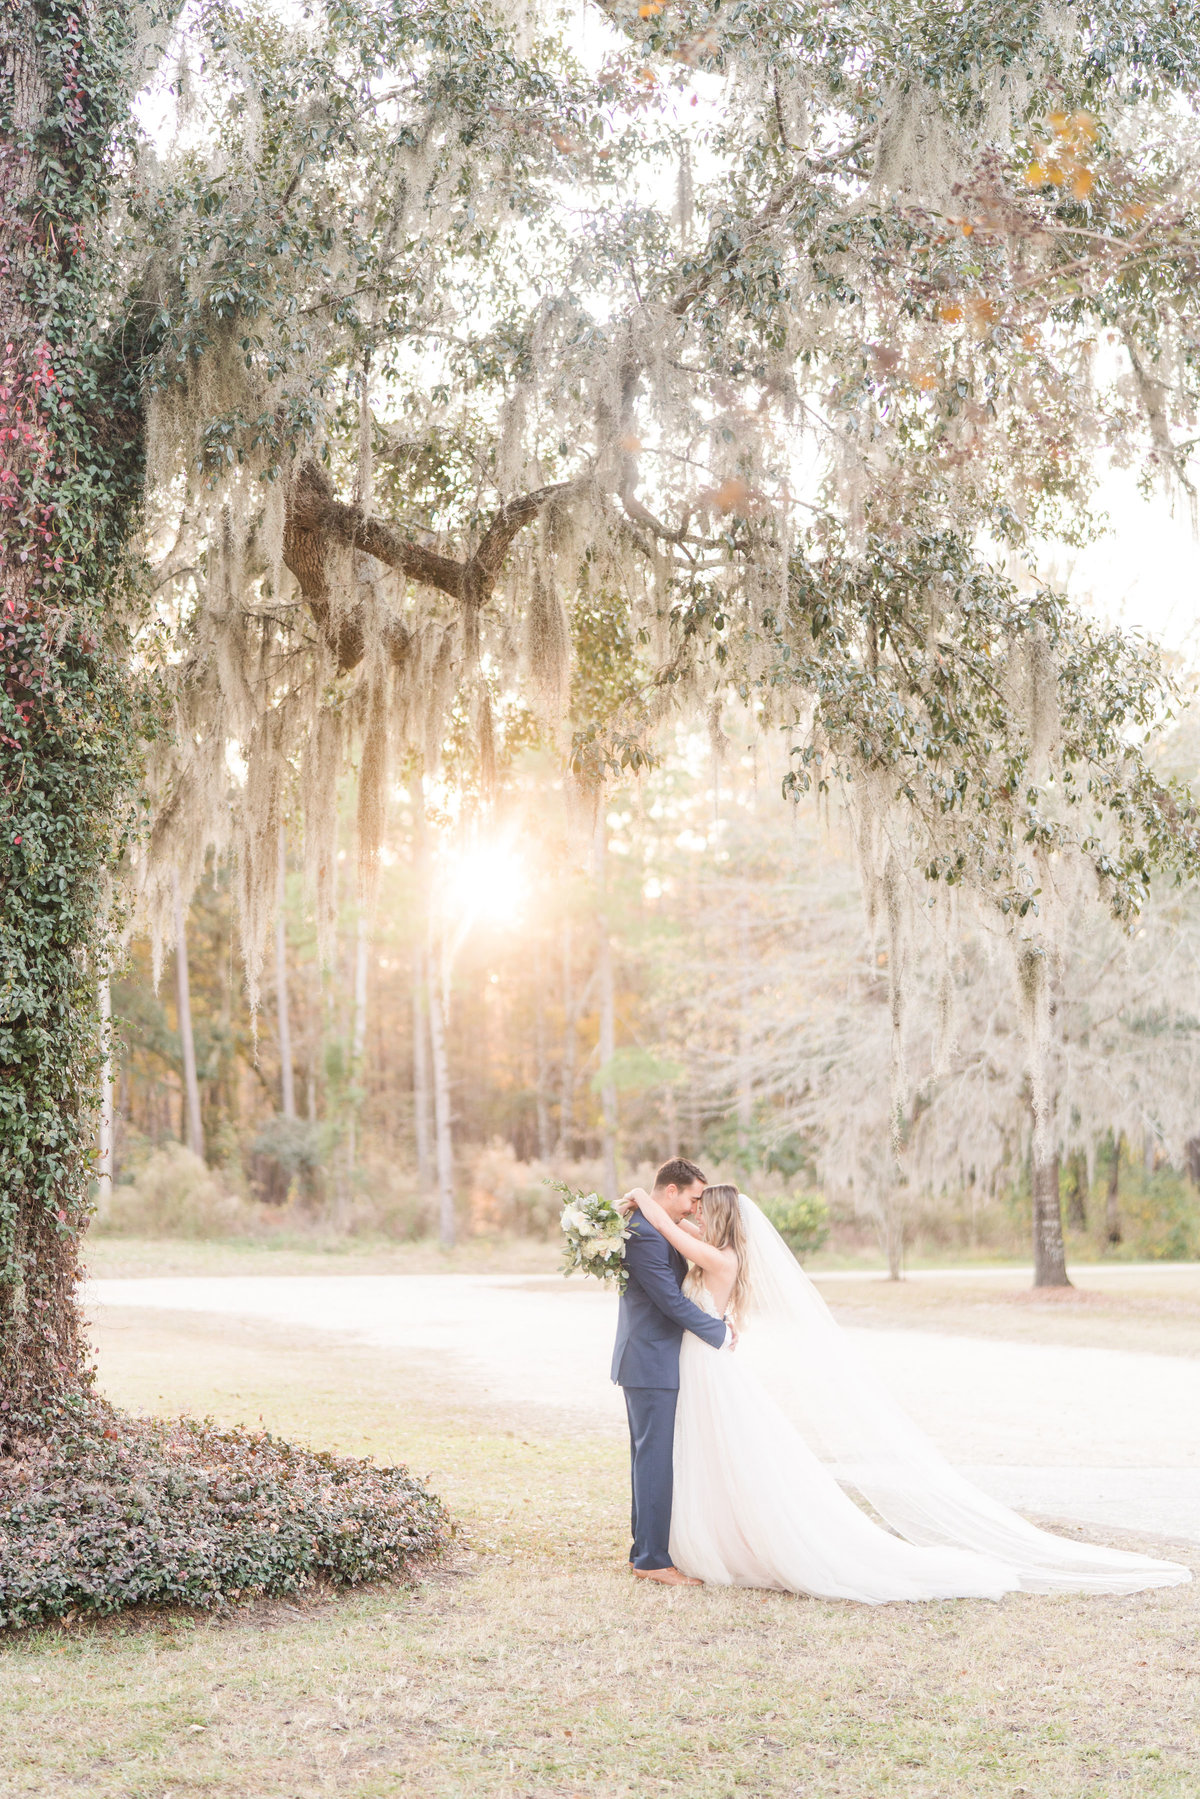 Kate Dye Photography Wedding Engagement Lifestyle Charleston South Carolina Photographer Bright Airy Colorful8